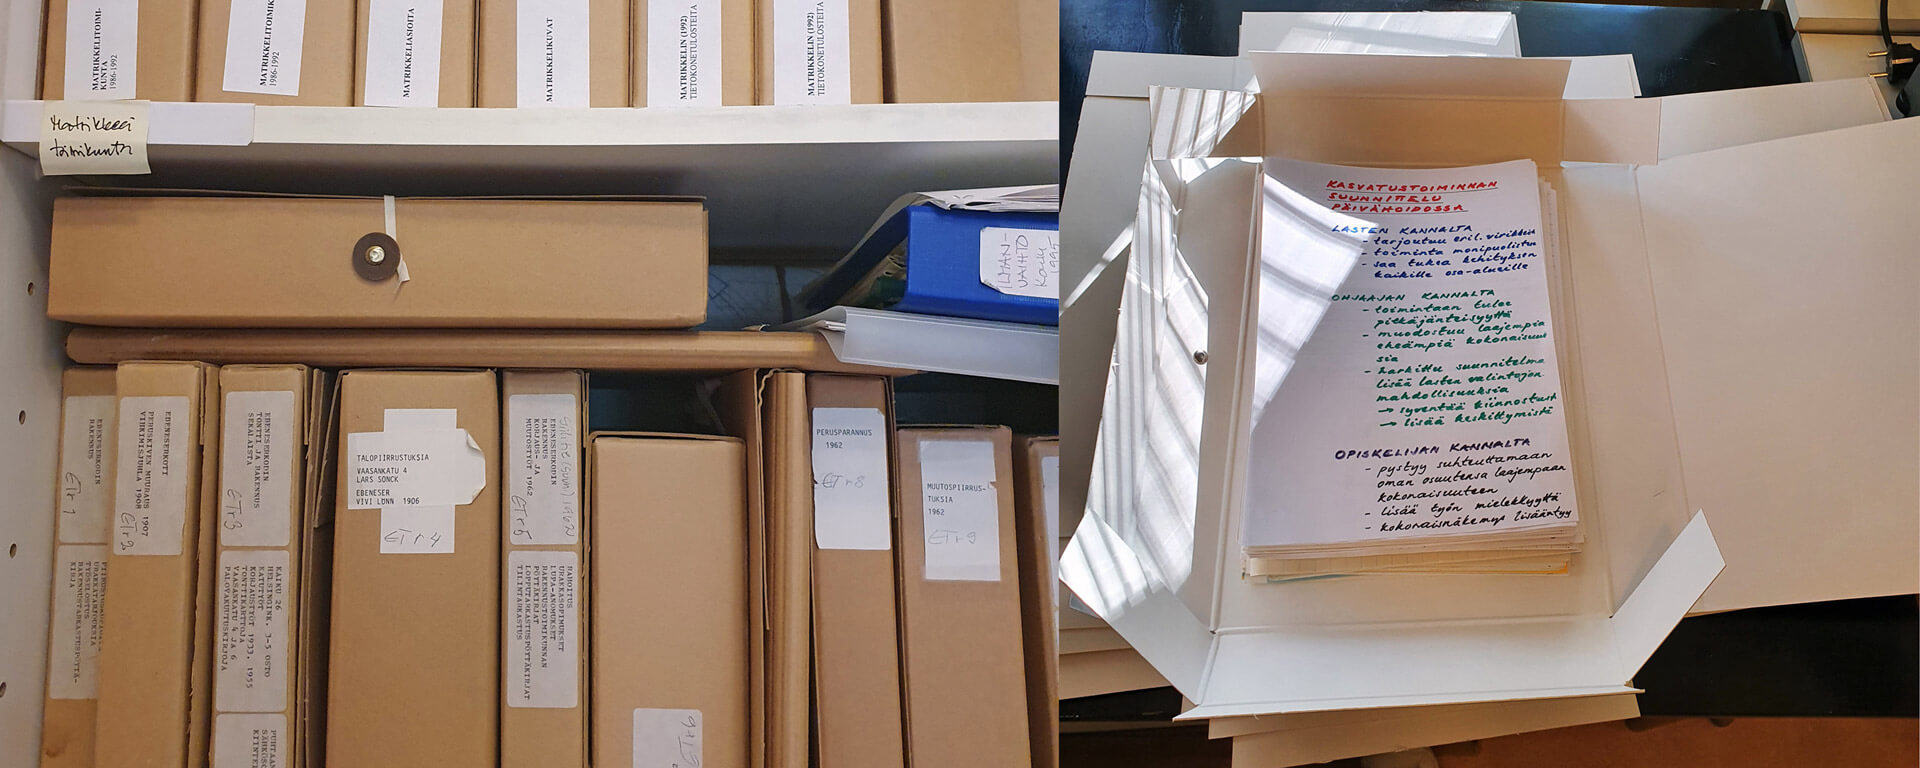 Kuvassa vasemmalla on Lastentarhamuseon asiakirja-arkiston ruskeita kansioita ja oikealla avattuna oleva asiakirjakansio, jonka sisällä on lastentarhanopettajakoulutuksen opetuskäytössä olleita piirtoheitinkalvoja. Lastentarhamuseo